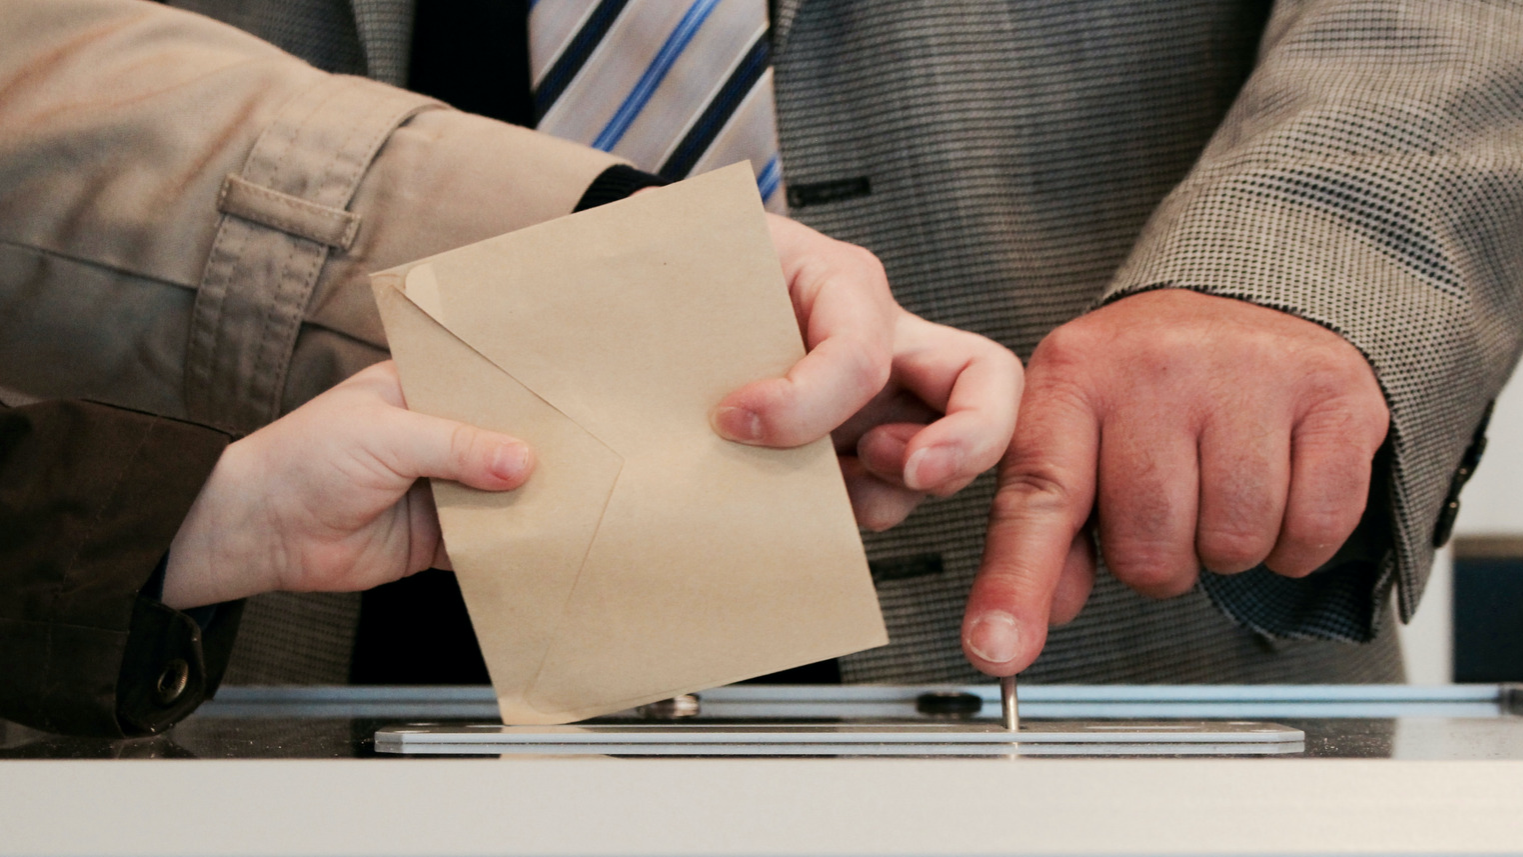 Ein Brief wird in eine Wahlurne geworfen als Zeichen für Demokratie